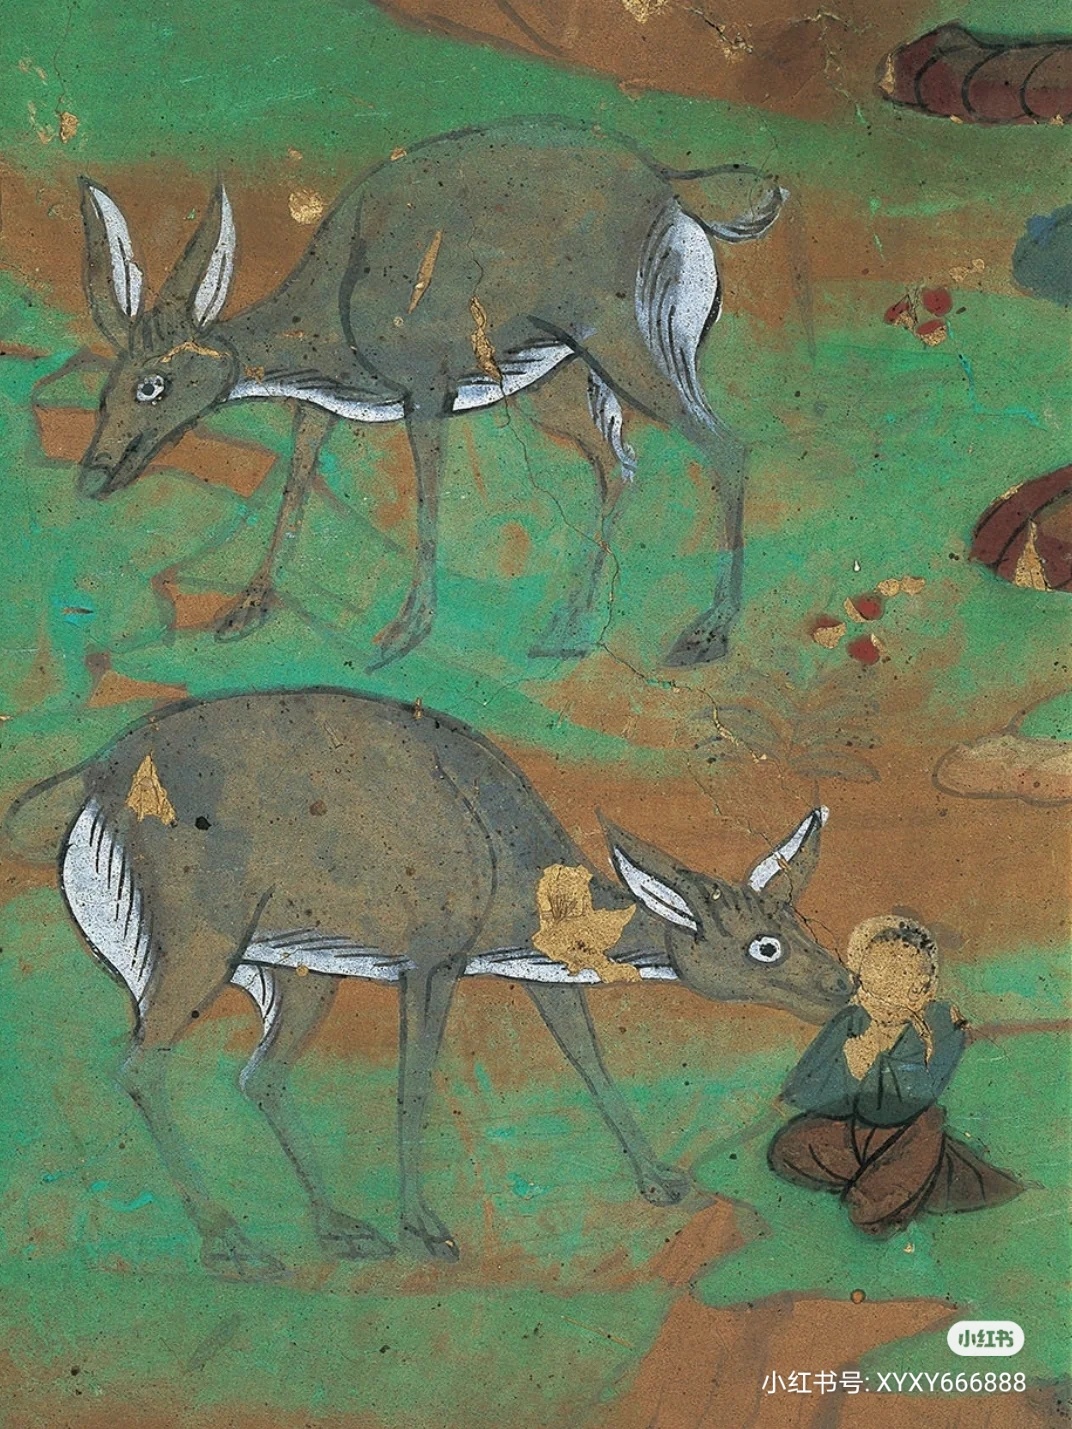 敦煌壁画中的动物形象图片